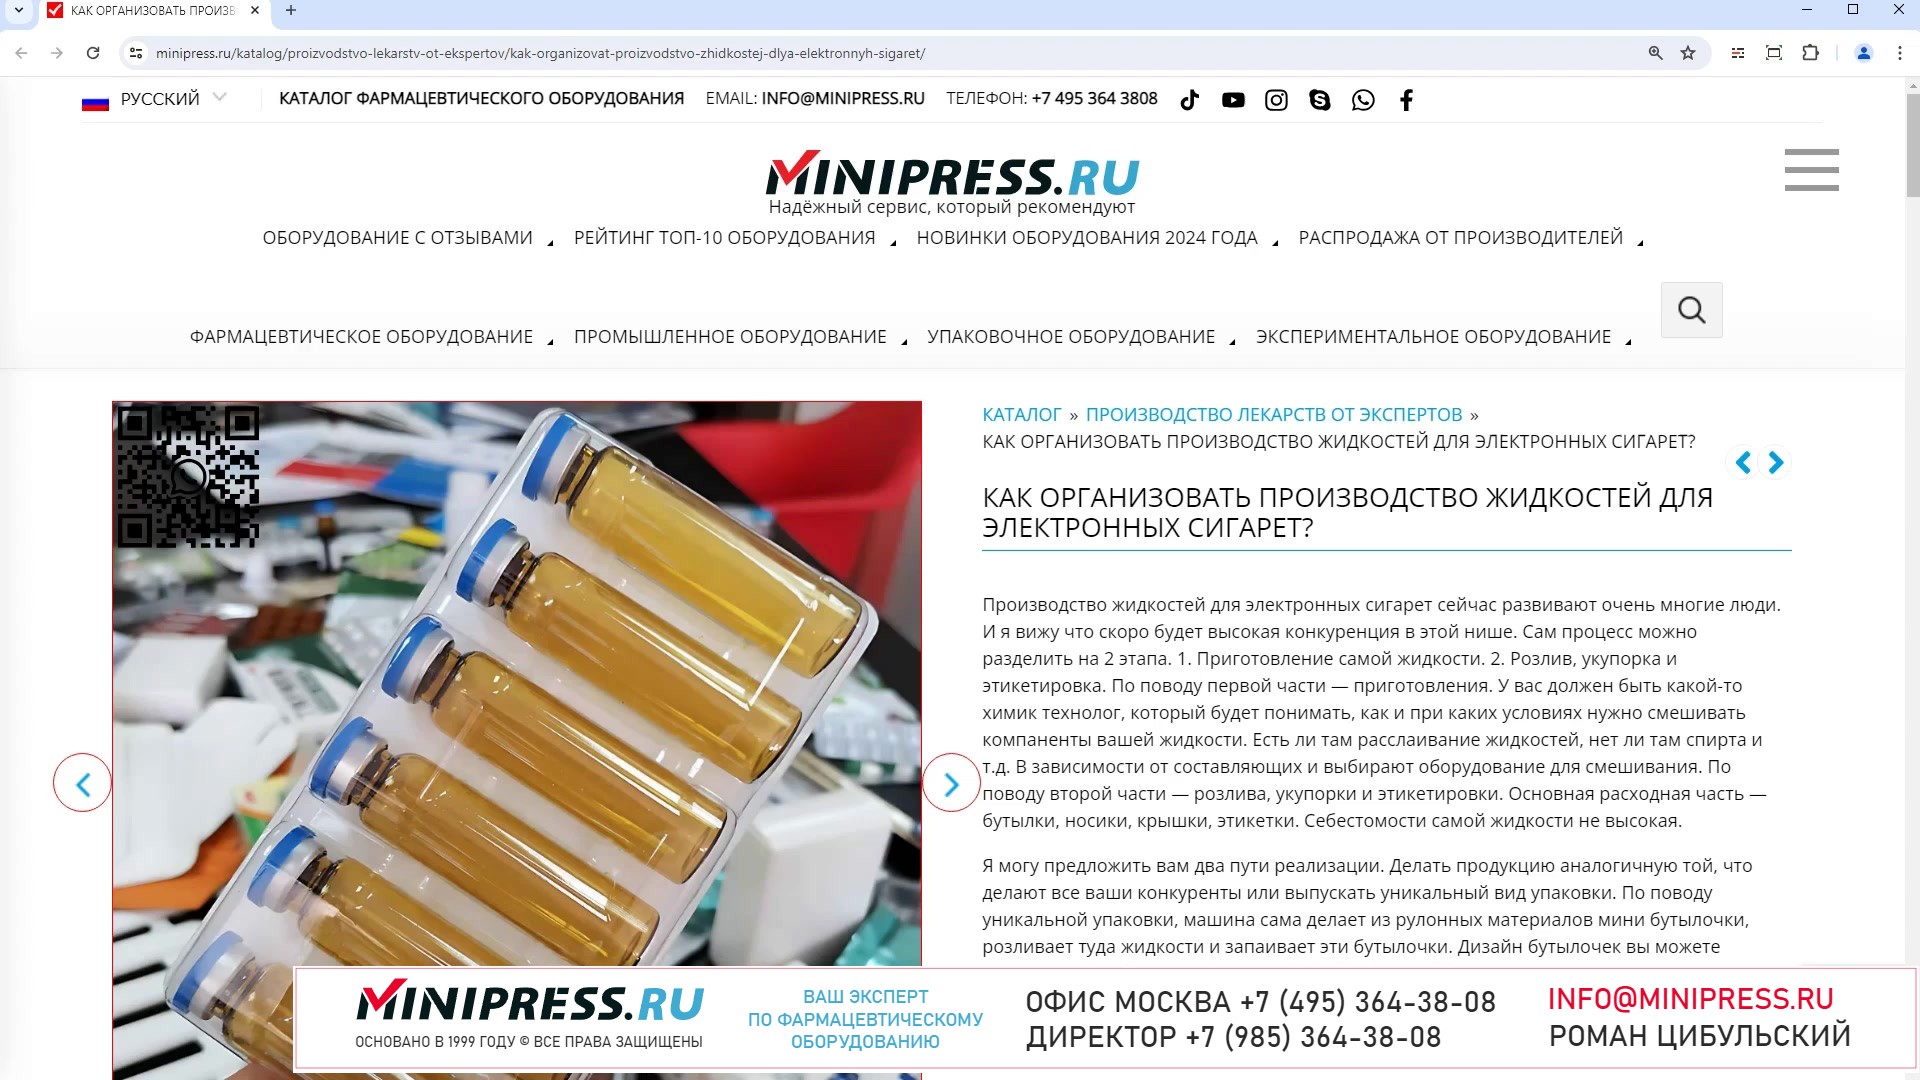 Minipress.ru Как организовать производство жидкостей для электронных сигарет